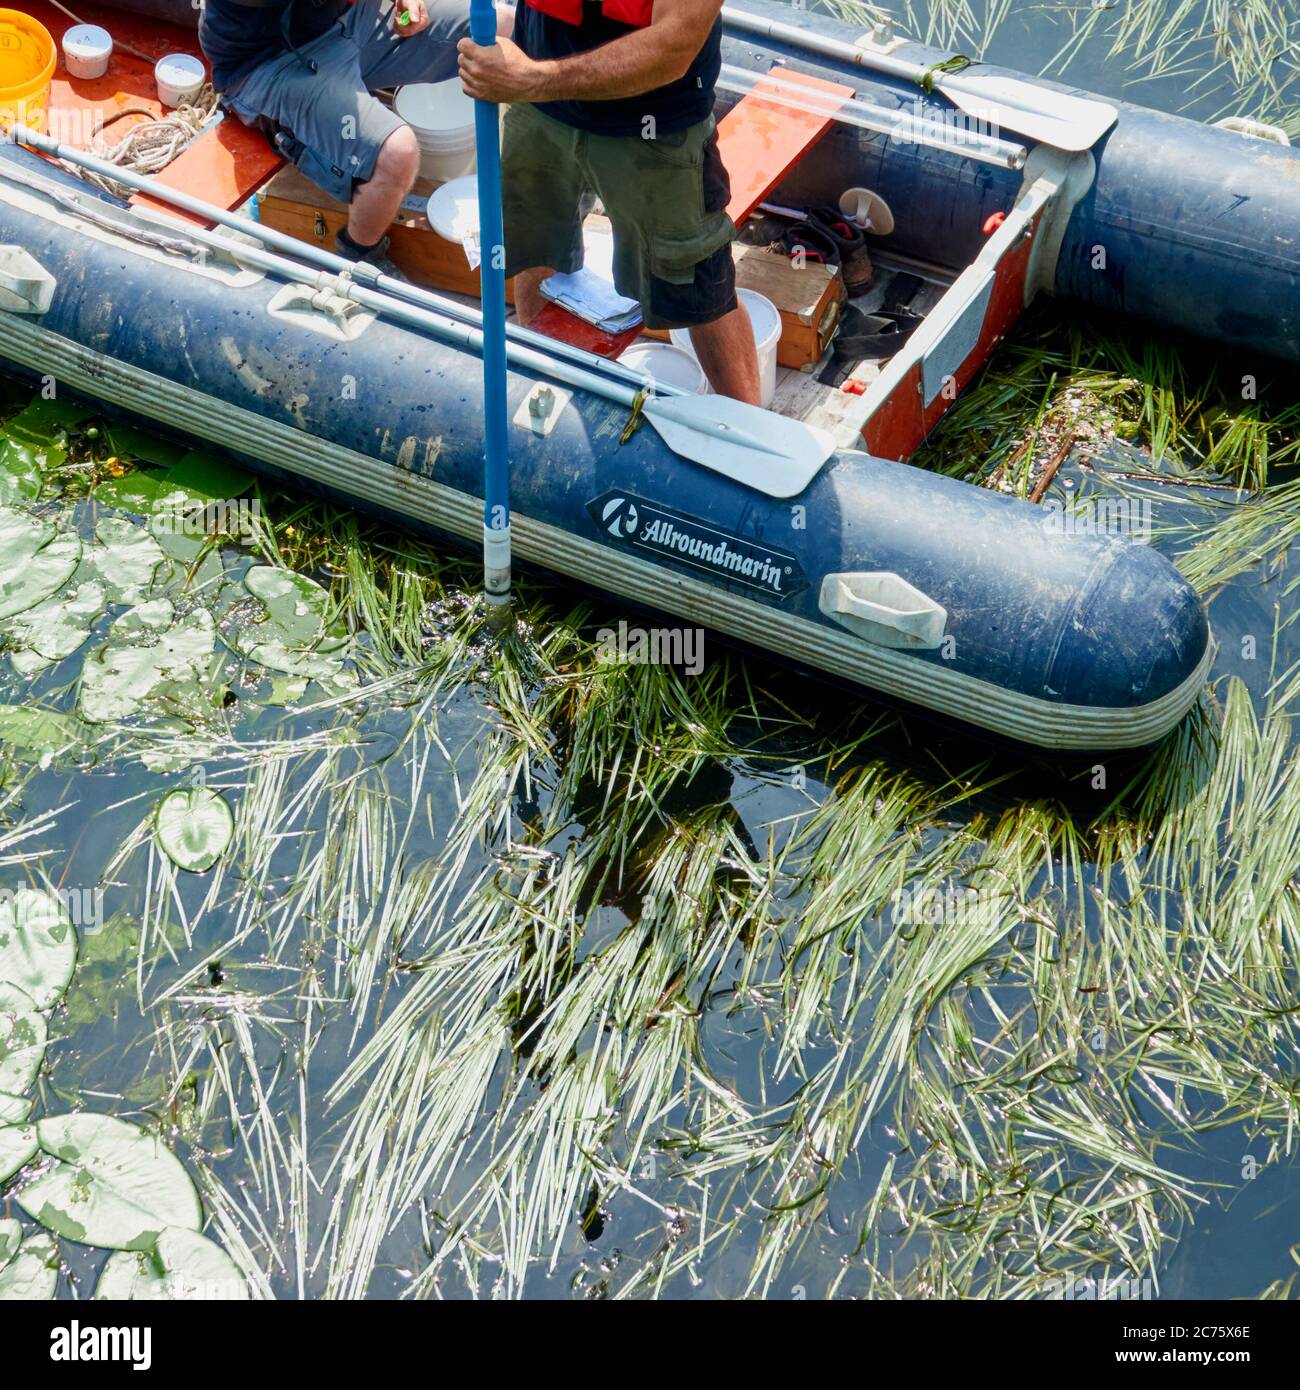 Celle, 17. Juni 2010: Entnahme einer Sedimentprobe aus einem aufblasbaren Boot mit einem Sedimentsammler Stockfoto